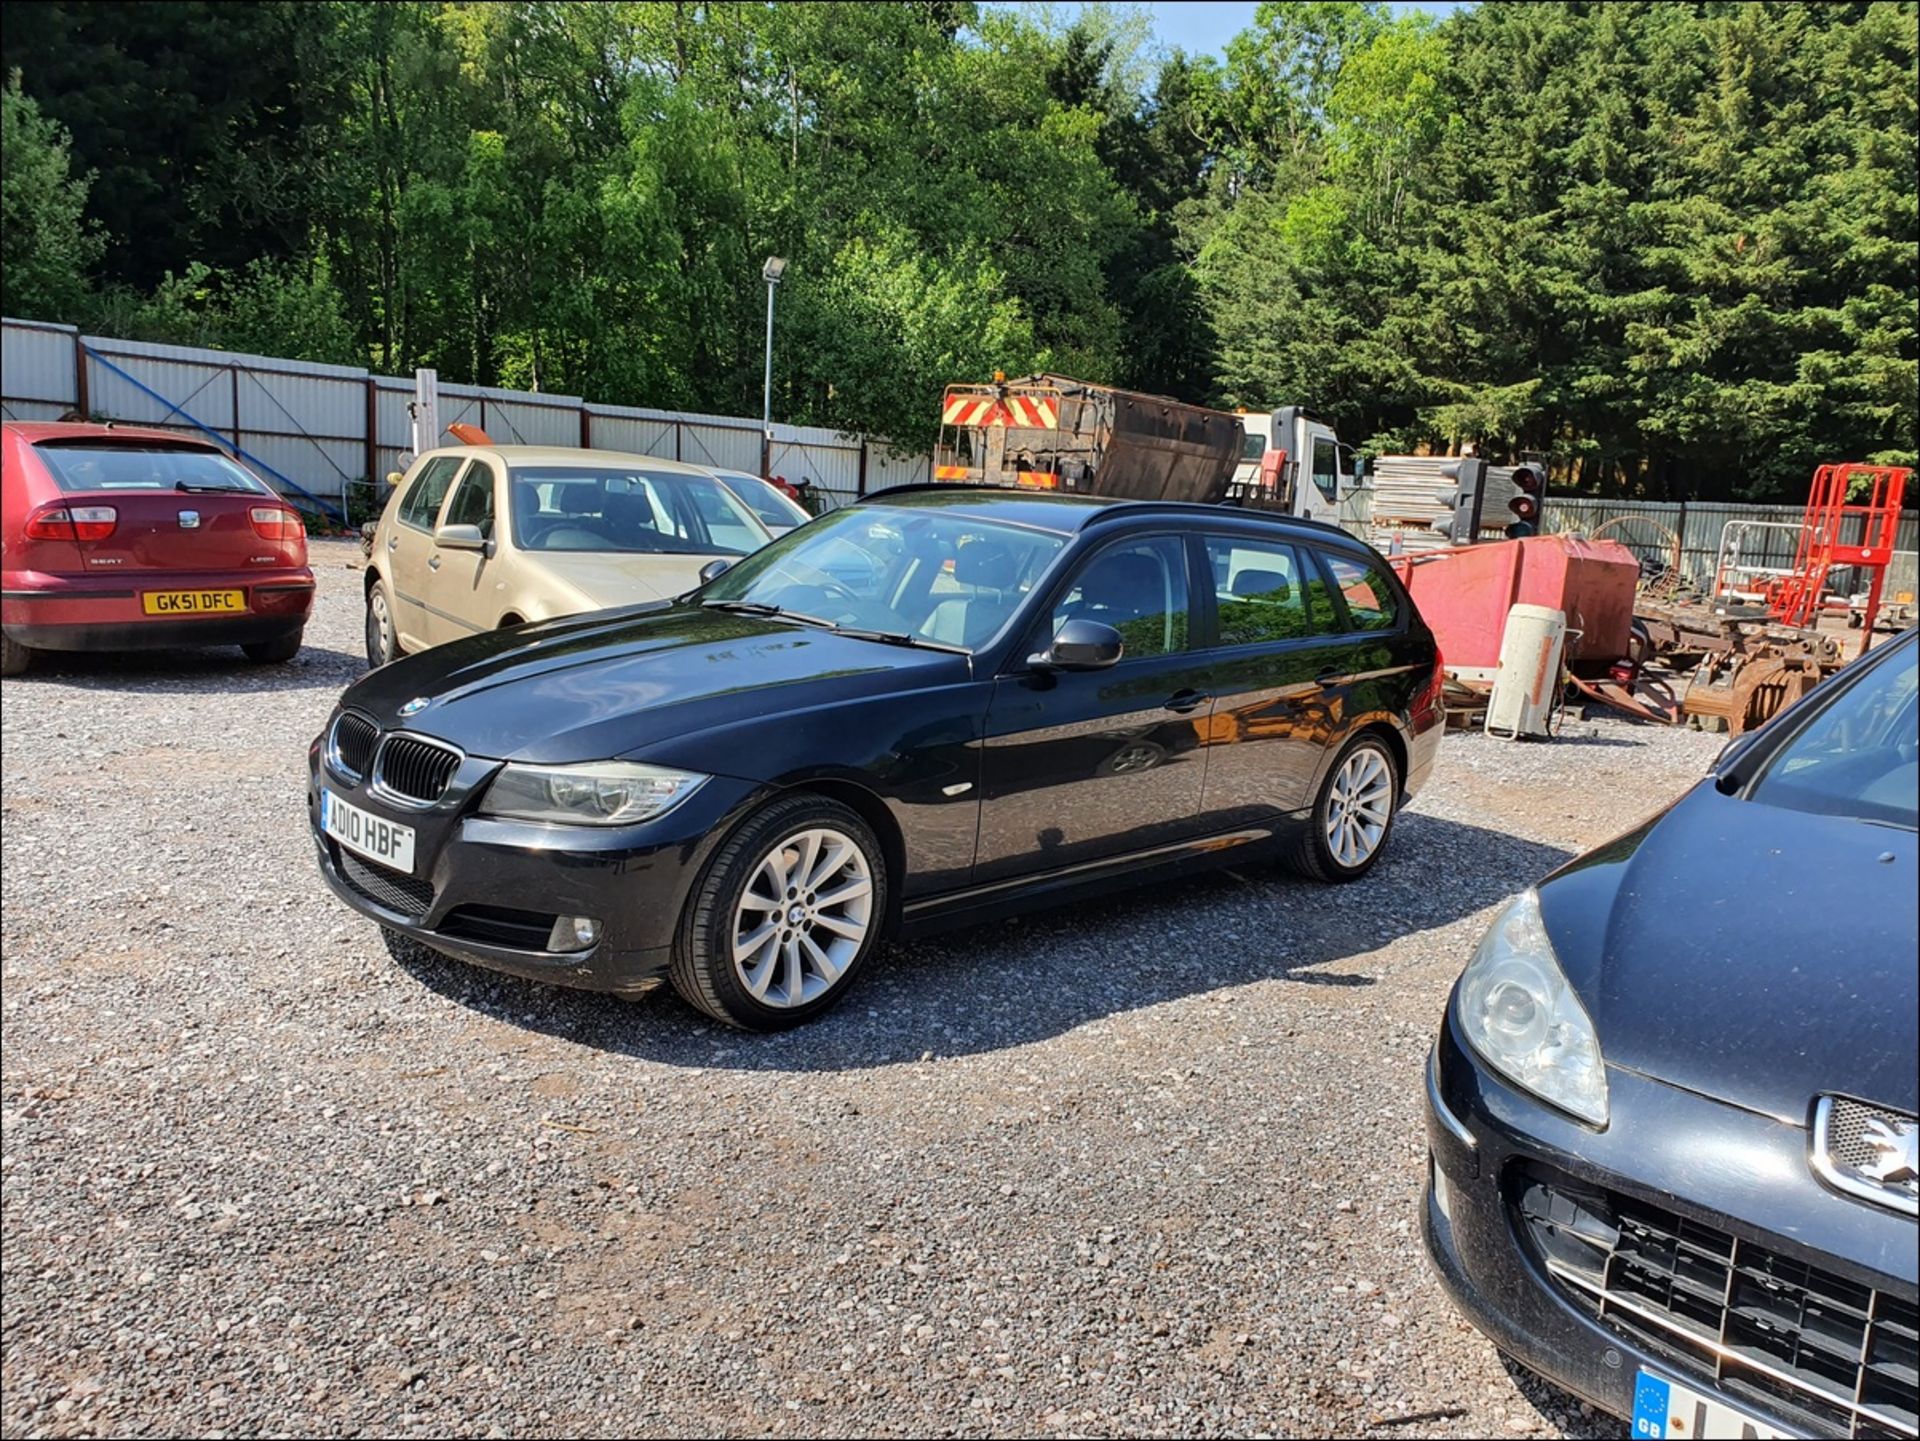 10/10 BMW 320D SE BUSINESS ED 181 - 1995cc 5dr Estate (Black, 164k) - Image 4 of 19